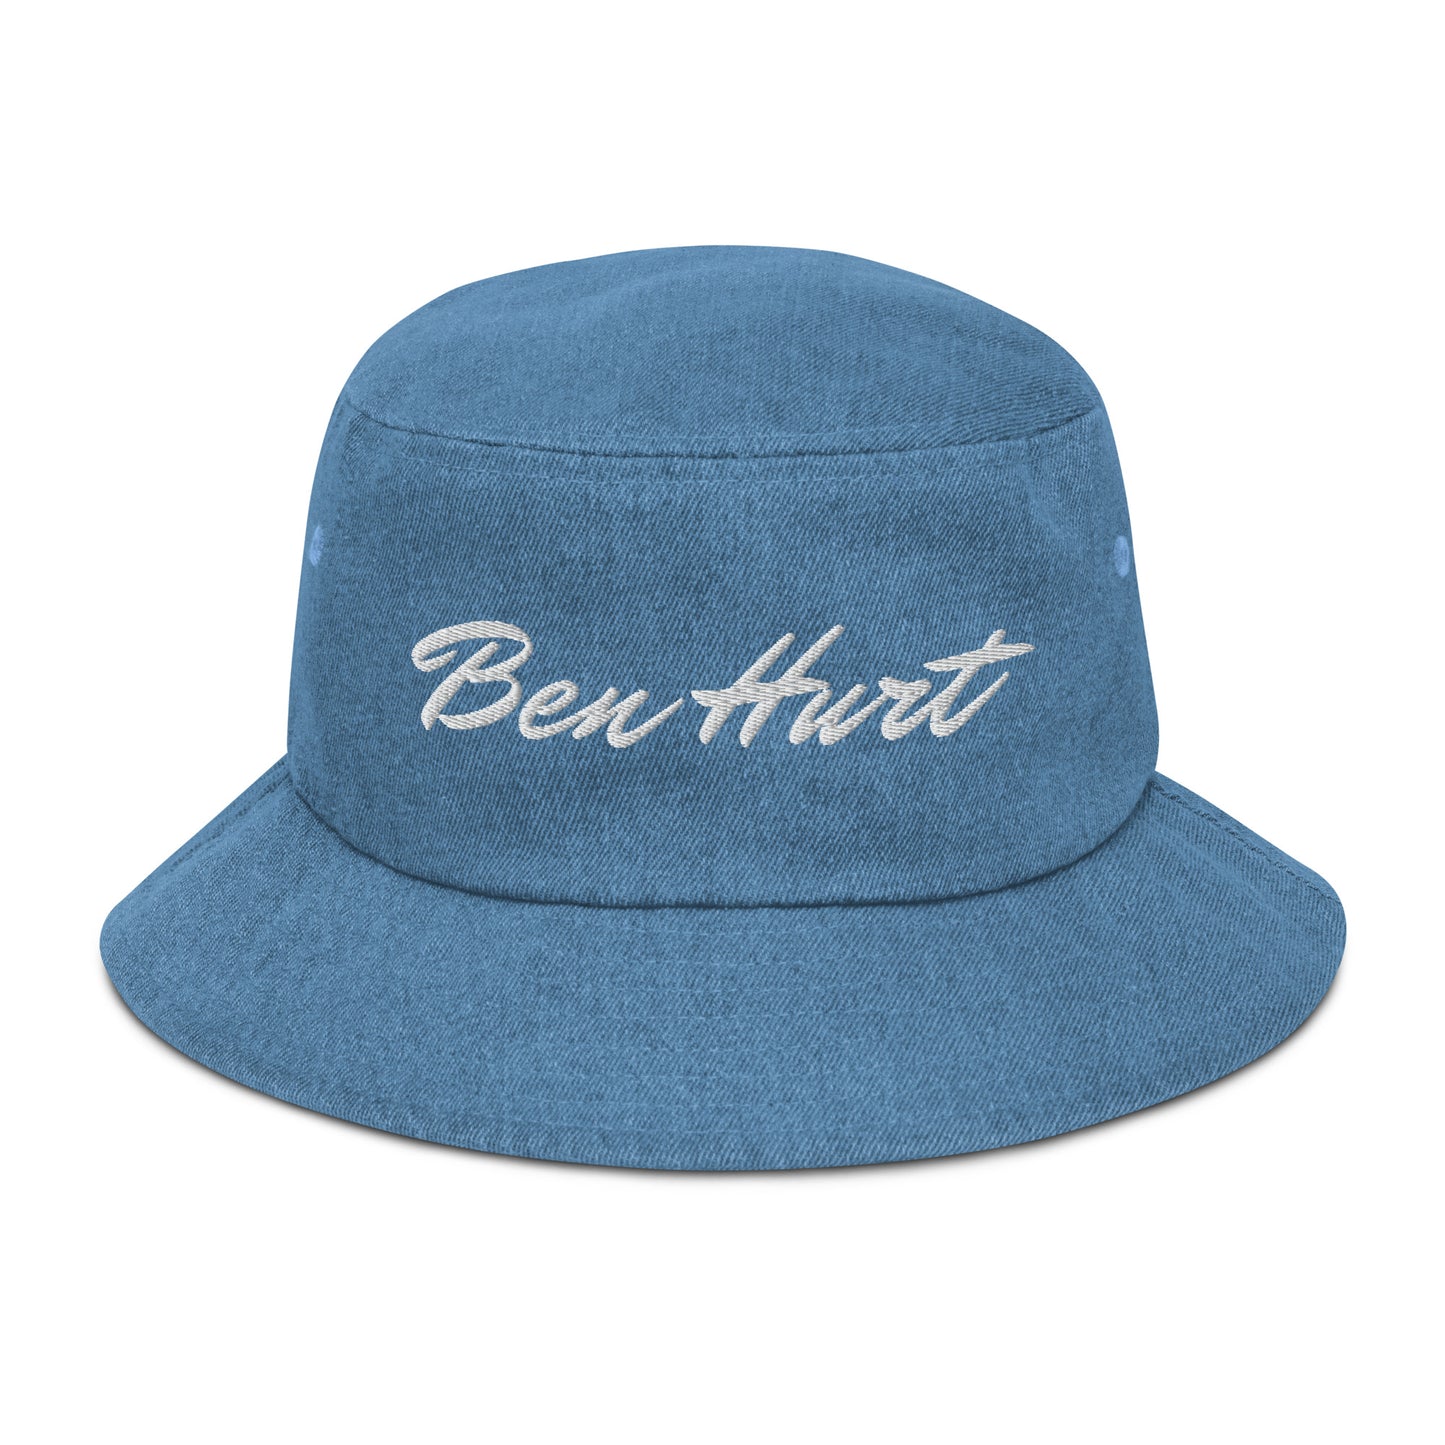 Ben Hurt Denim bucket hat